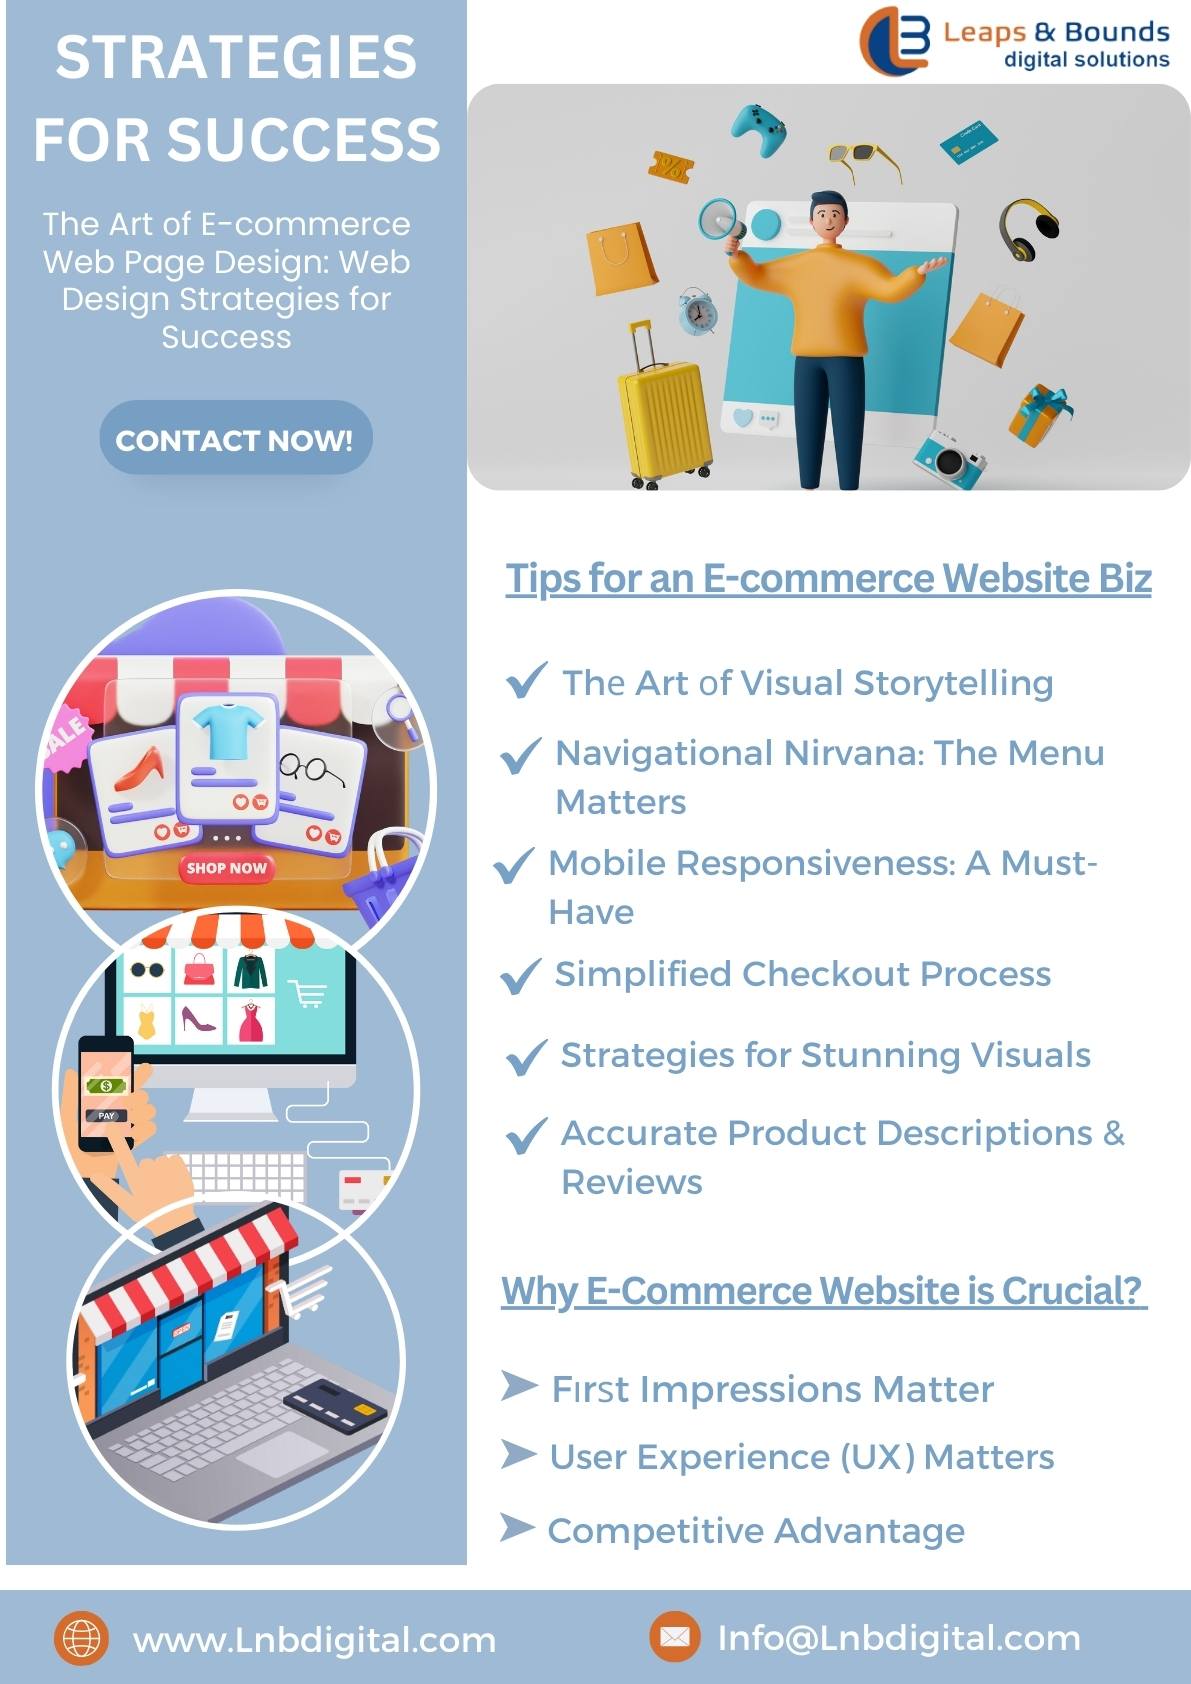 E-commerce Web Page Design Strategies